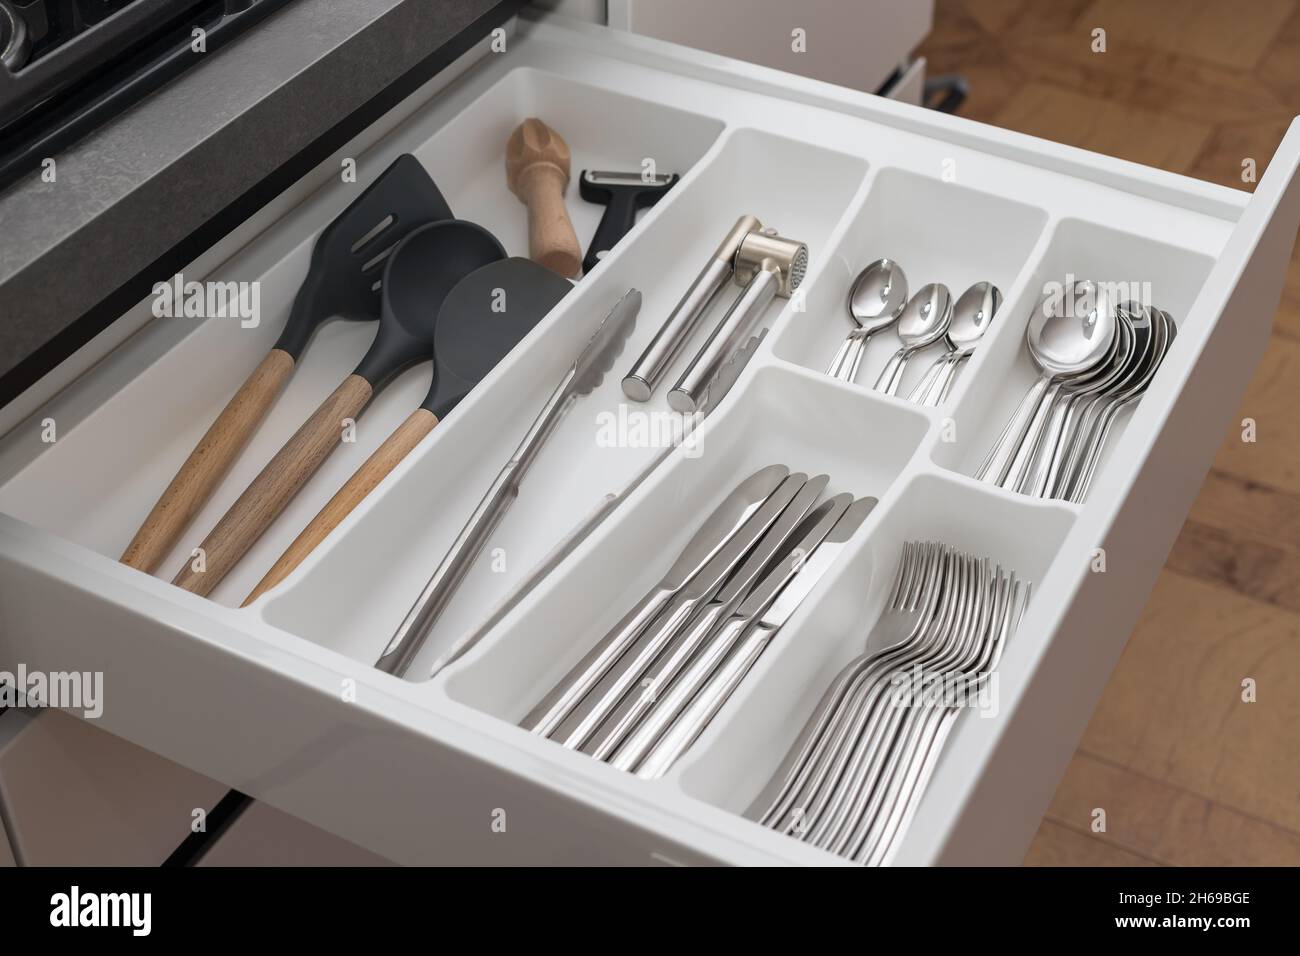 Ouvrez le tiroir avec le jeu d'ustensiles.Rangement de la cuisine Photo  Stock - Alamy